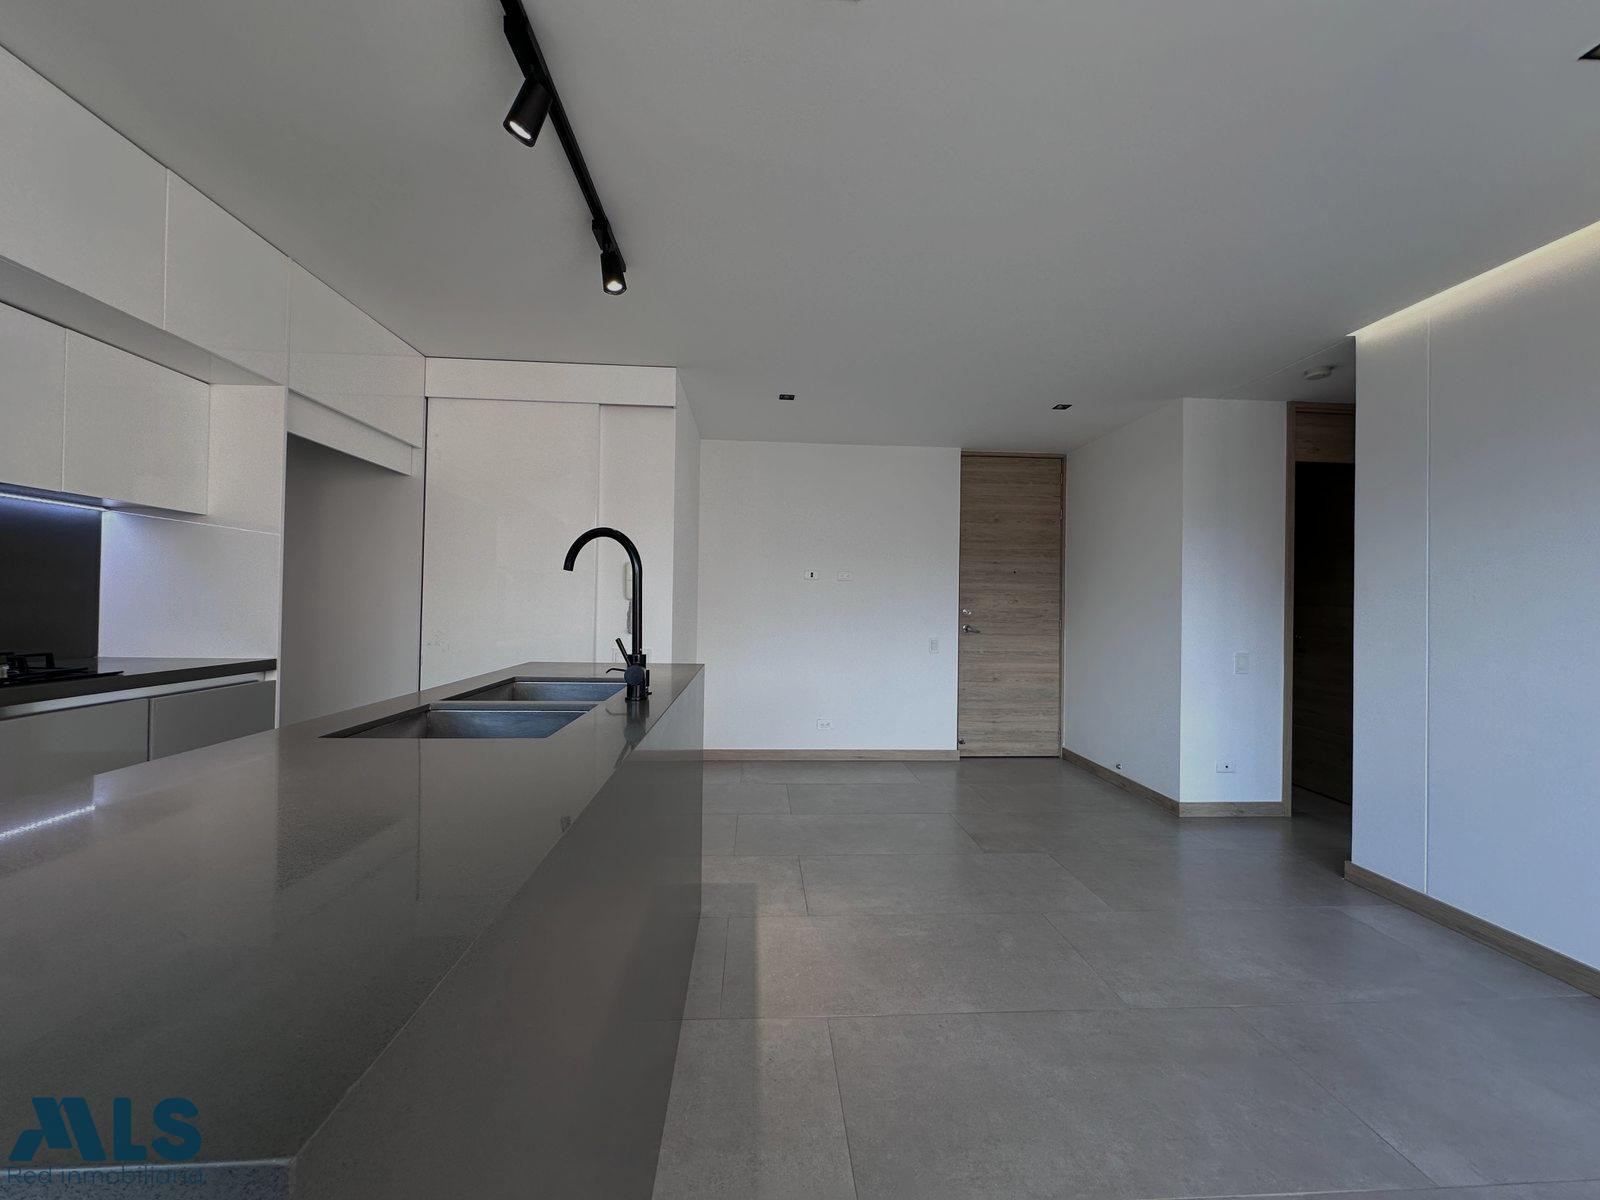 Espectacular y moderno apartamento en Sabaneta sabaneta - asdesillas